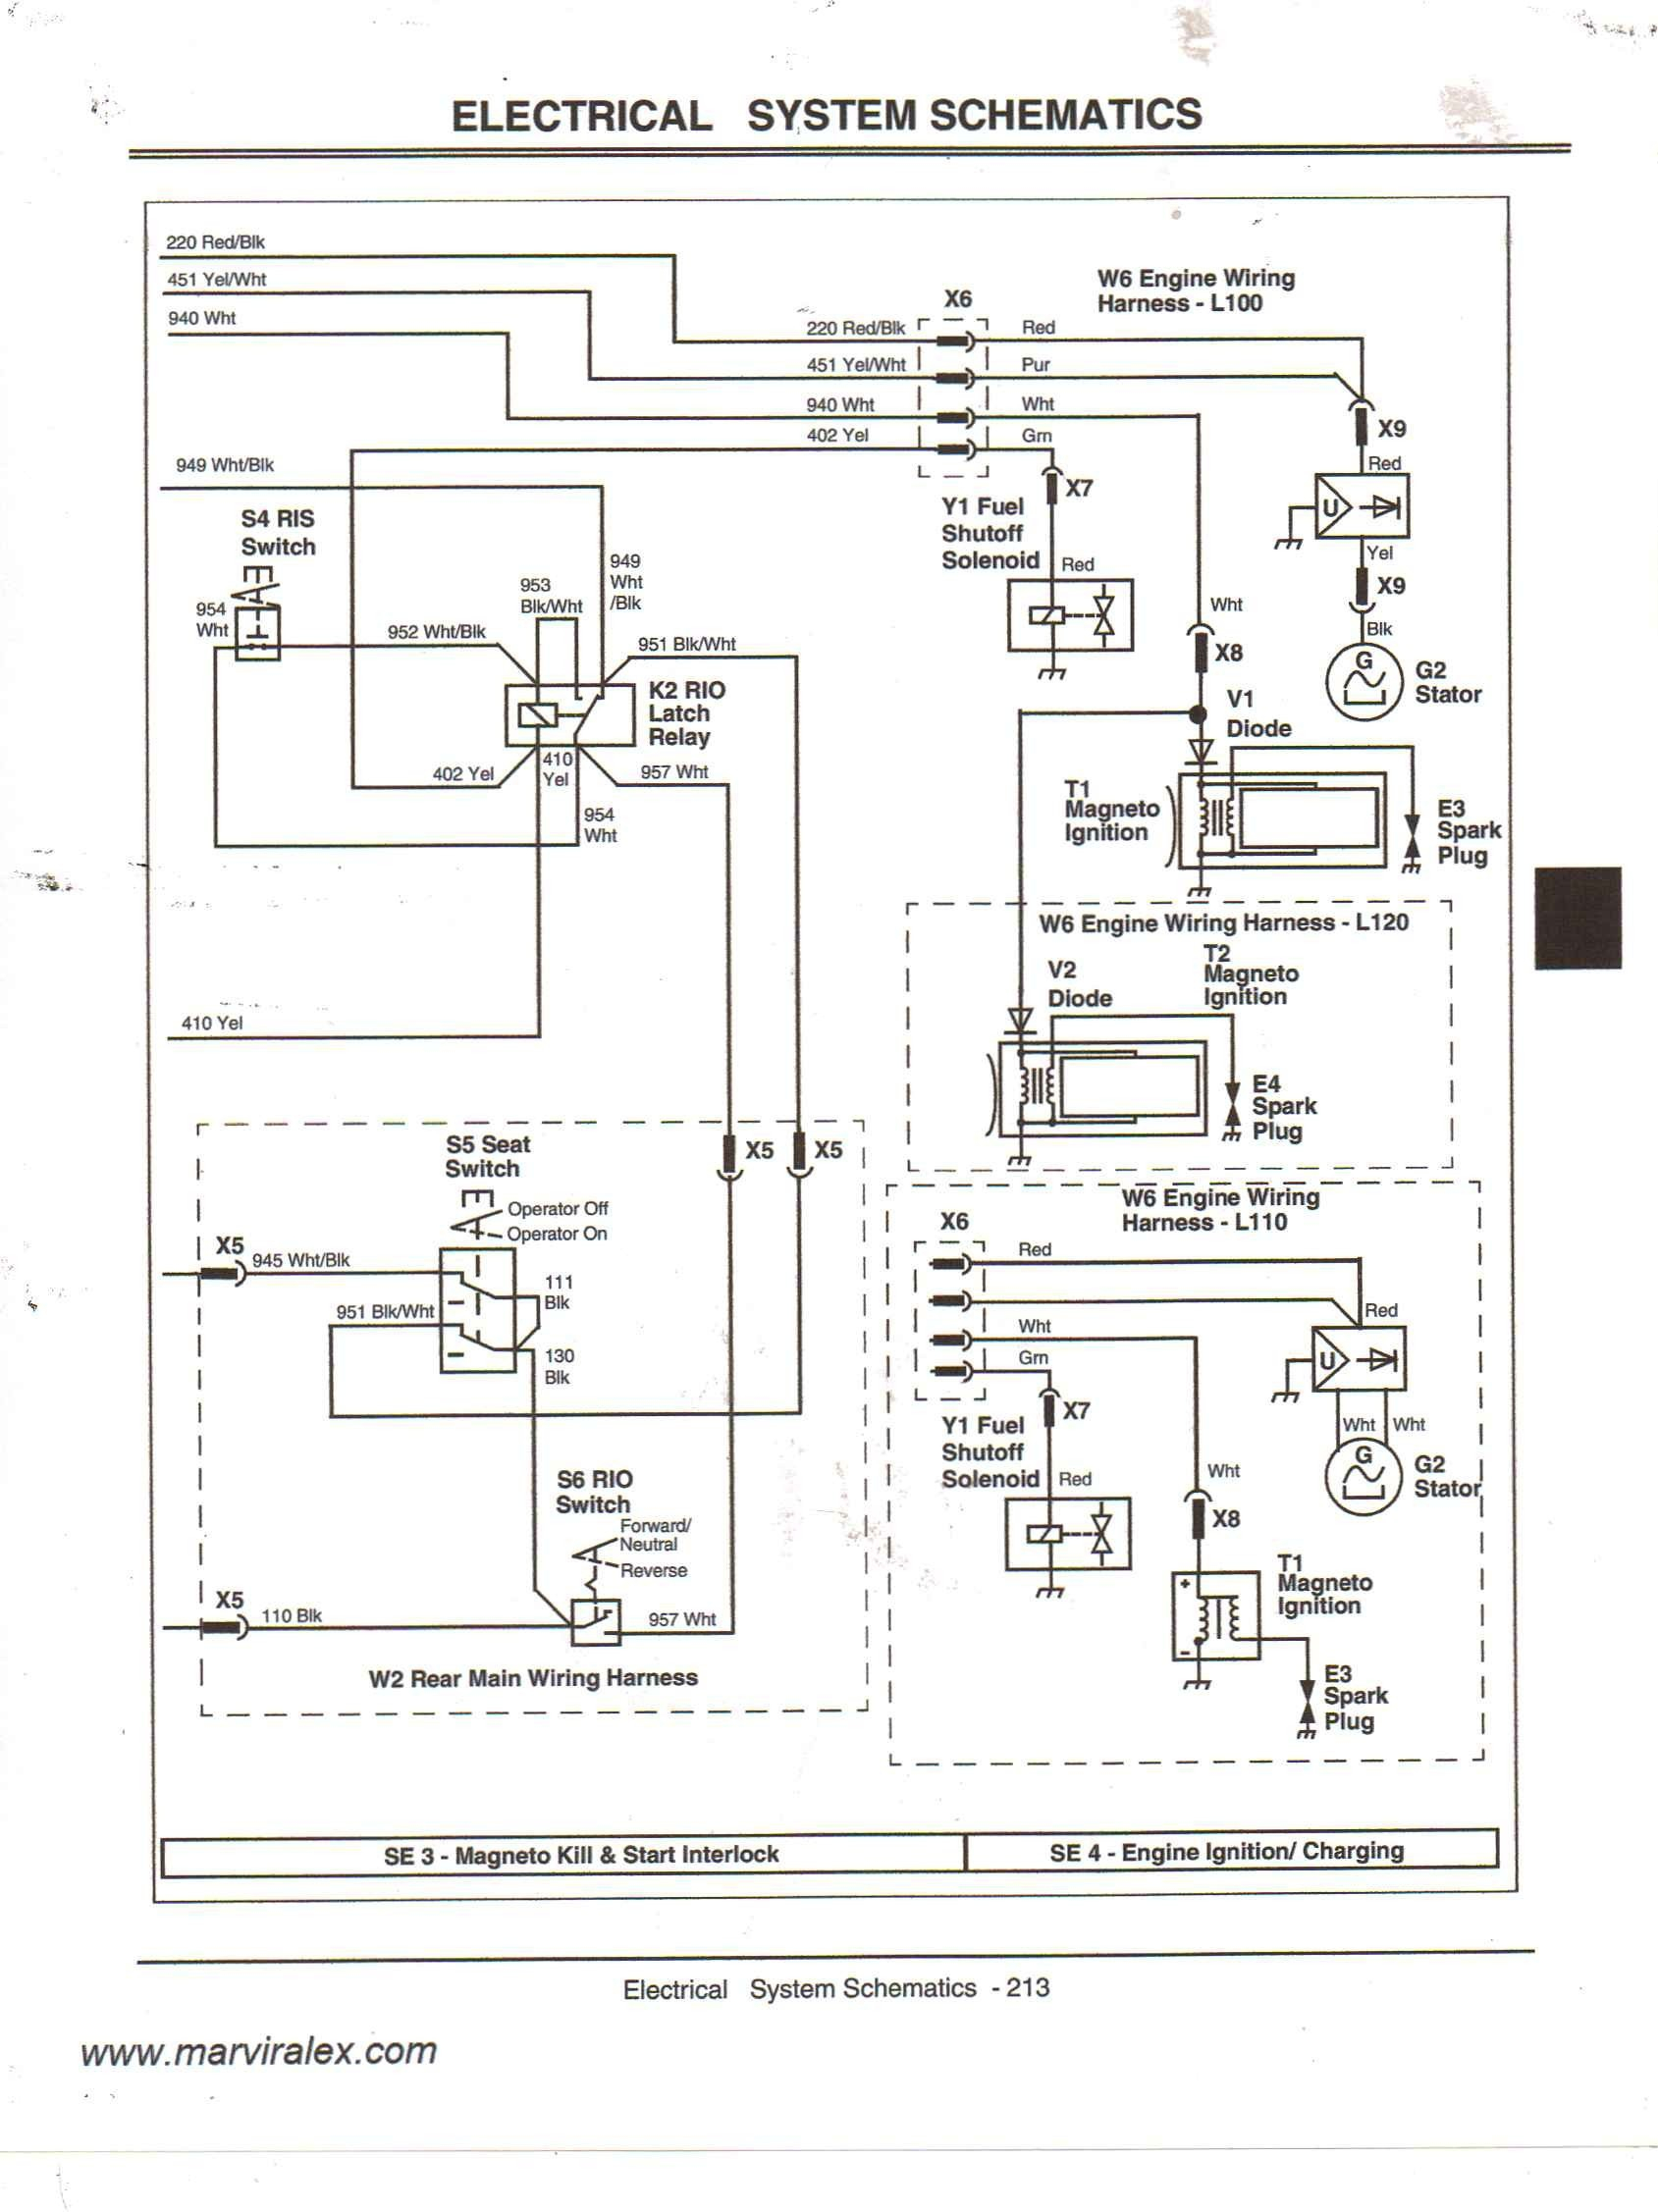 John Deere Lt133 Wiring Diagram | Wiring Diagram - John Deere Lt133 Wiring Diagram